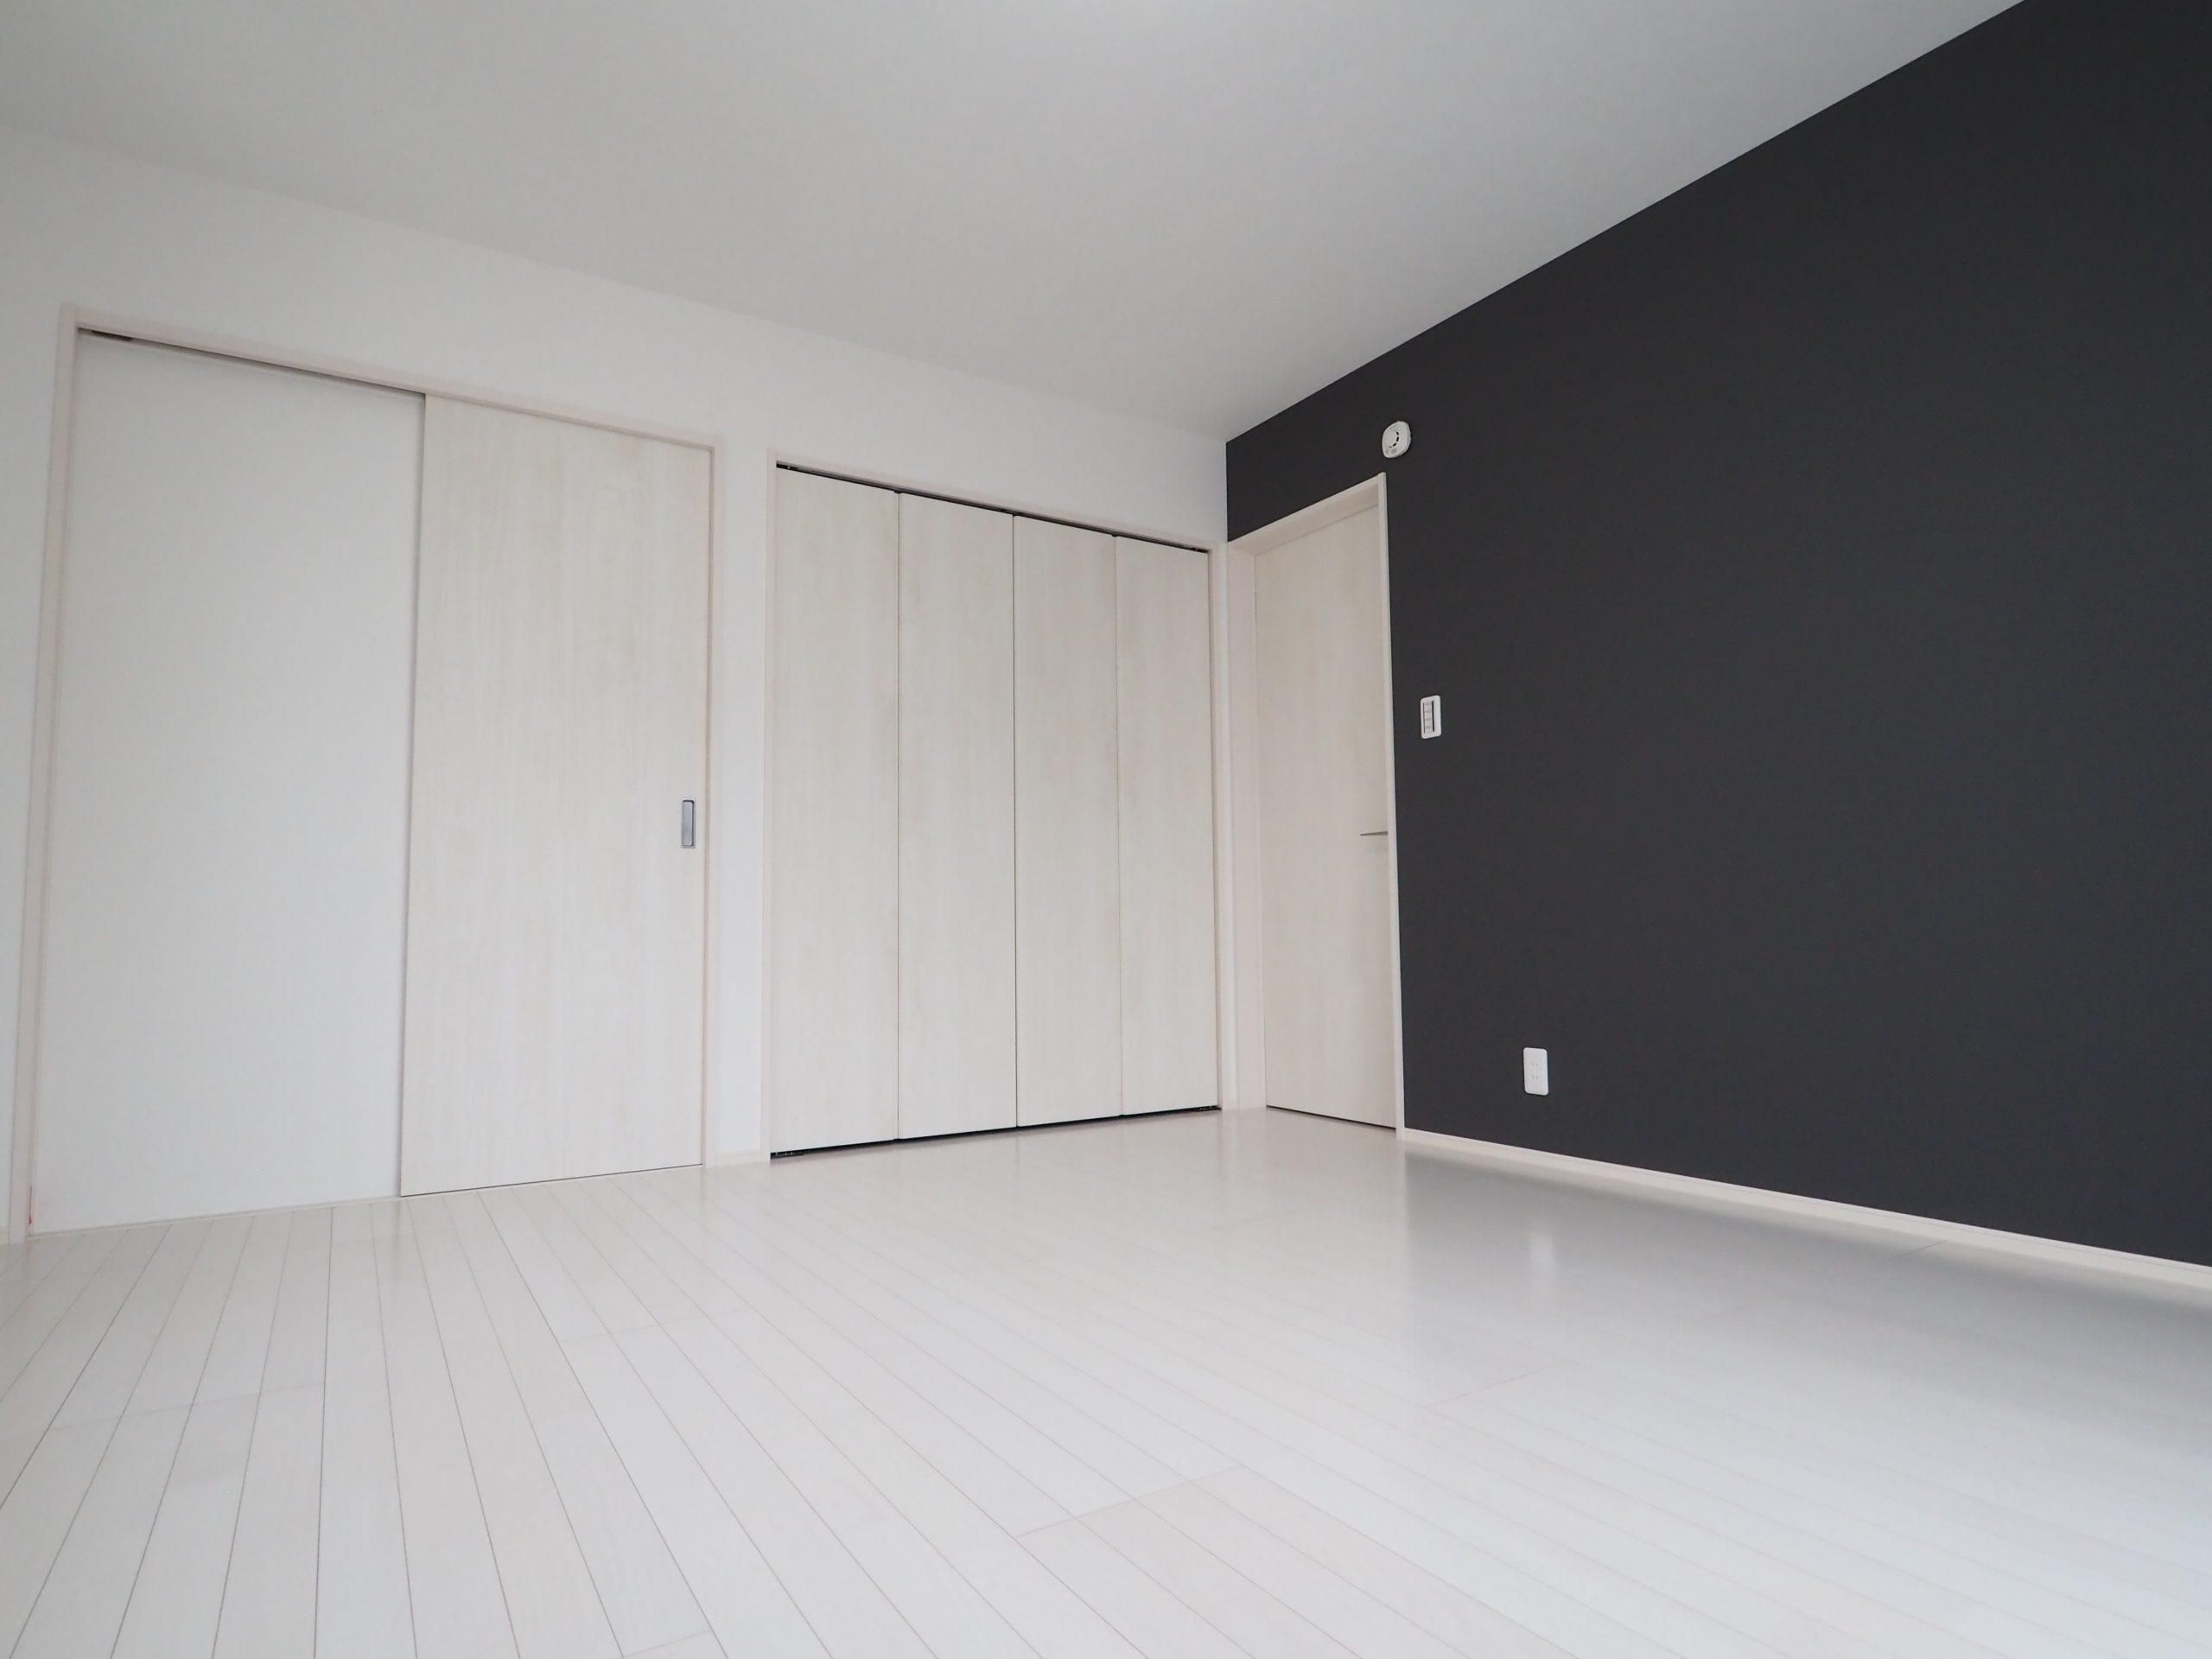 坂戸市にっさい新築戸建住宅の２階洋室画像。白のフローリング白のドアで白を基調にしました。アクセントクロスで紺を使いスタイリッシュで洗練された印象です。